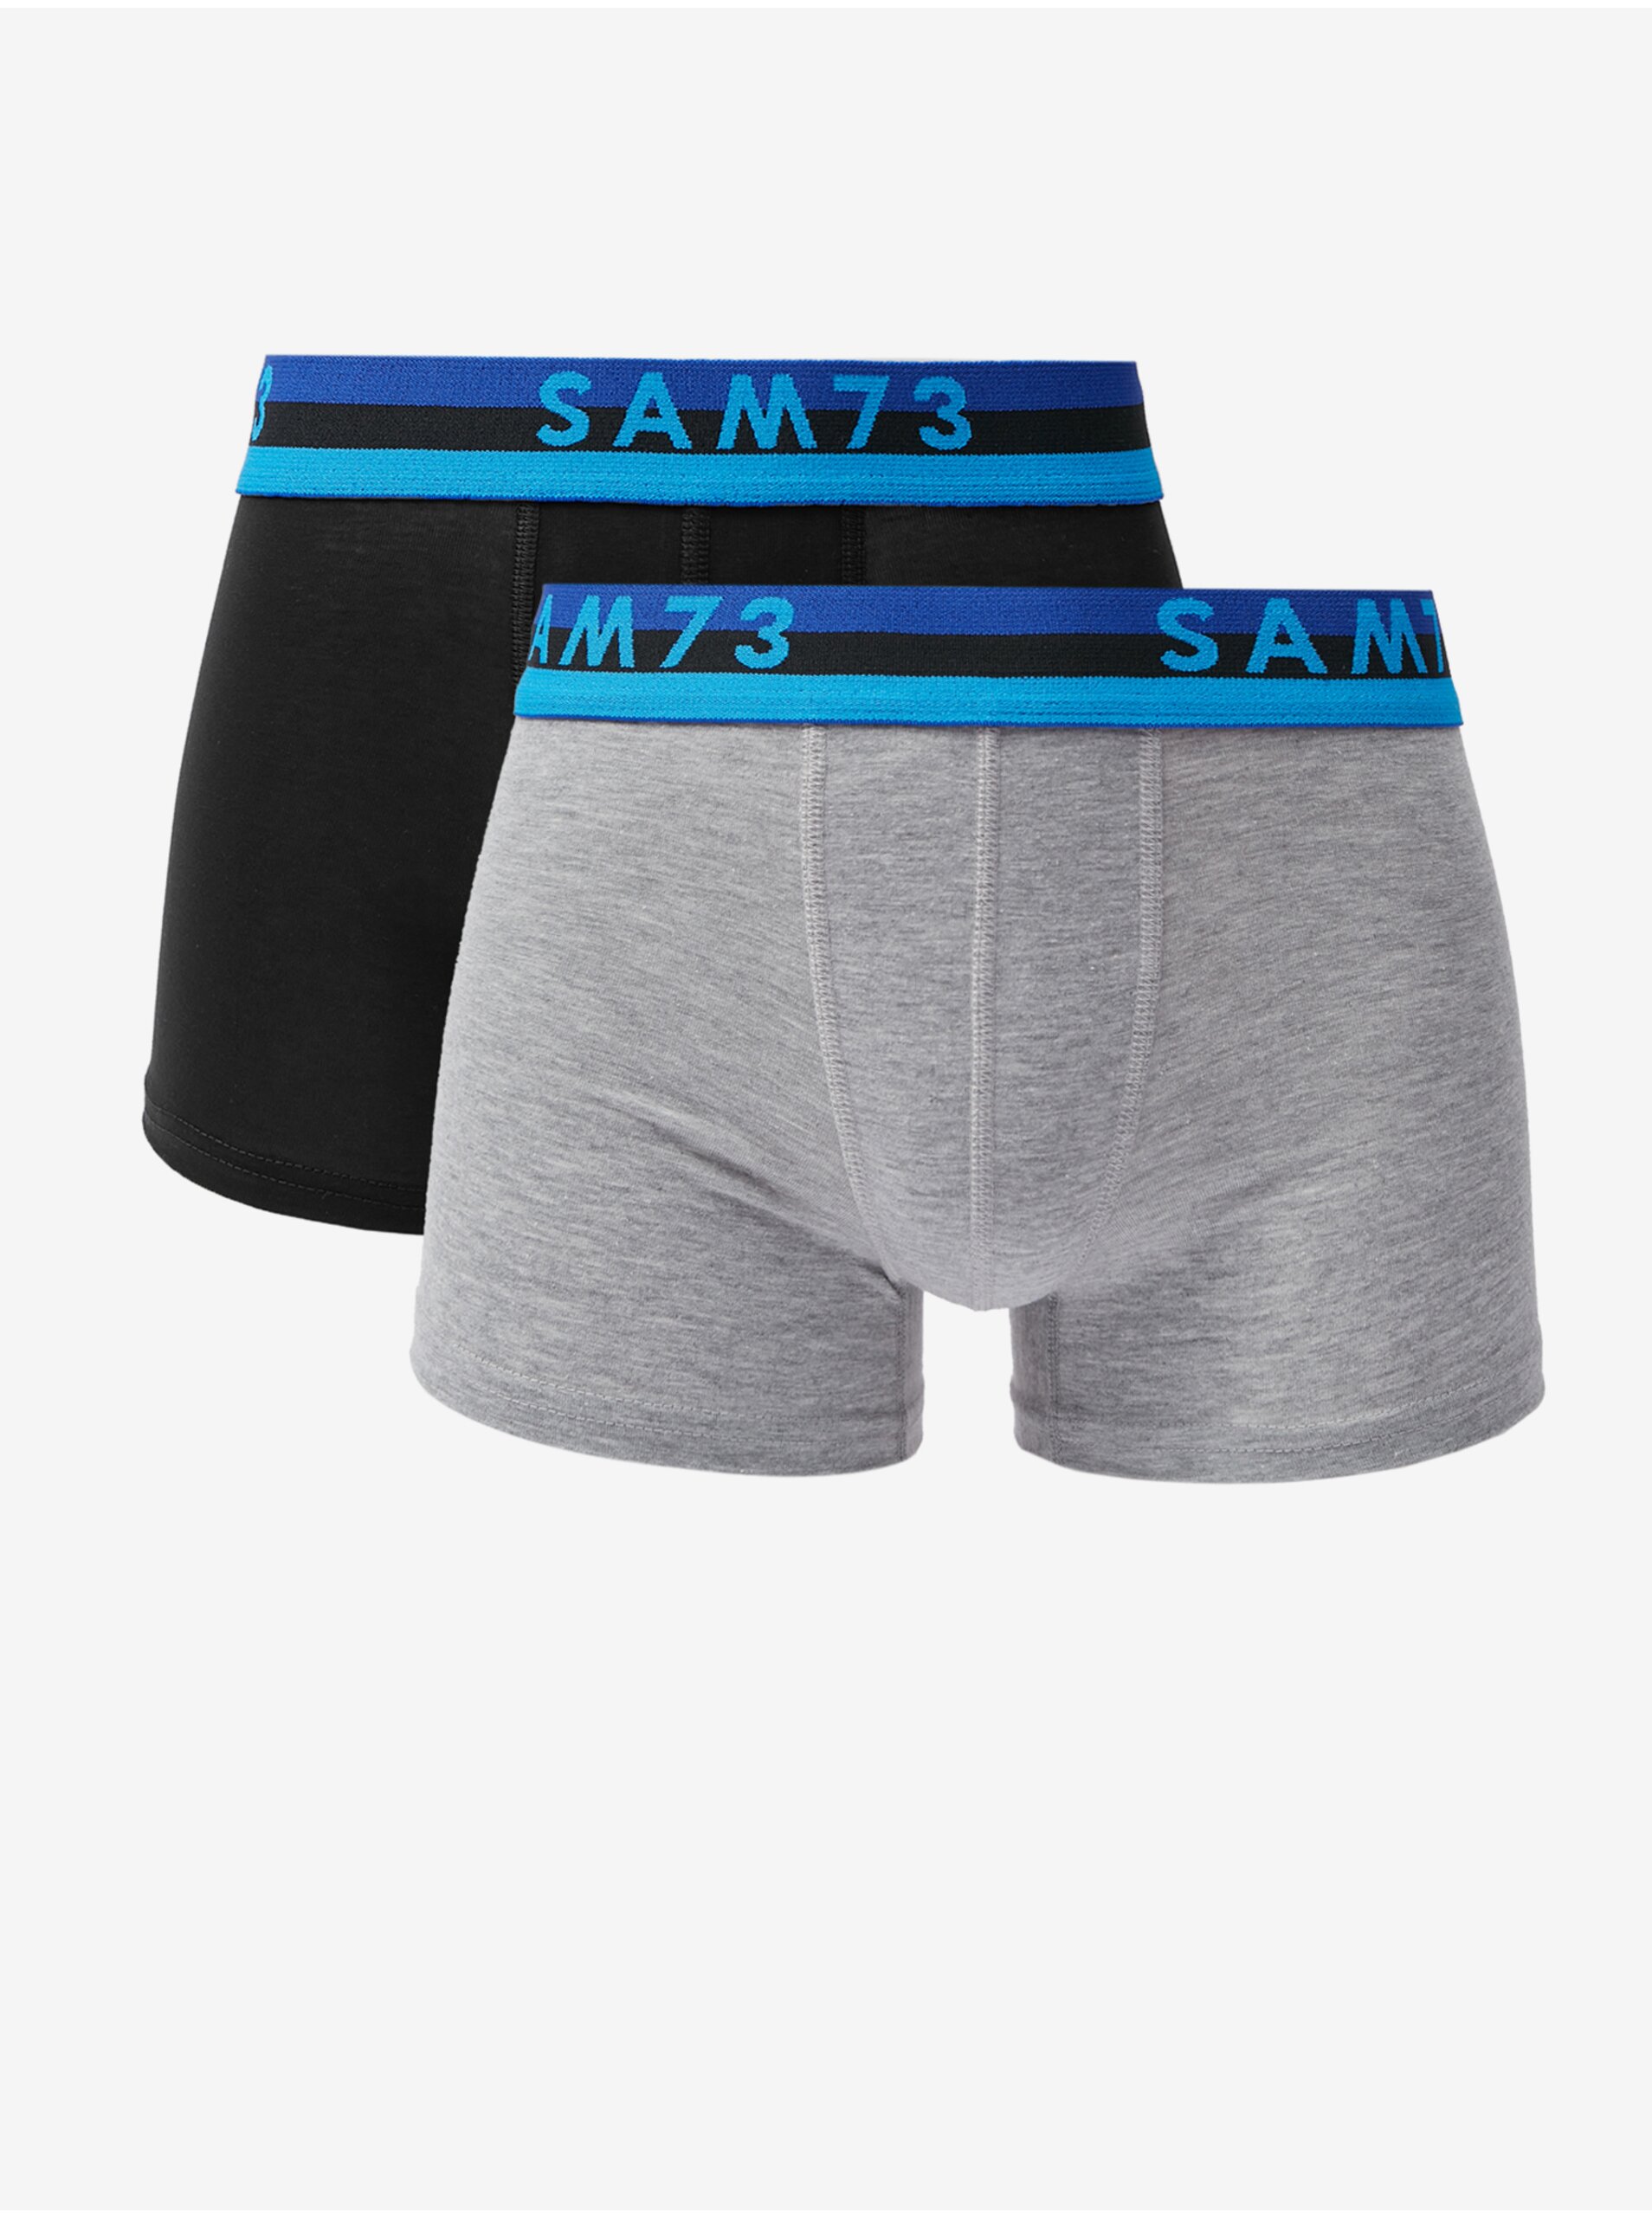 E-shop Sada dvou pánských boxerek v šedé a černé barvě SAM 73 Hiddenit